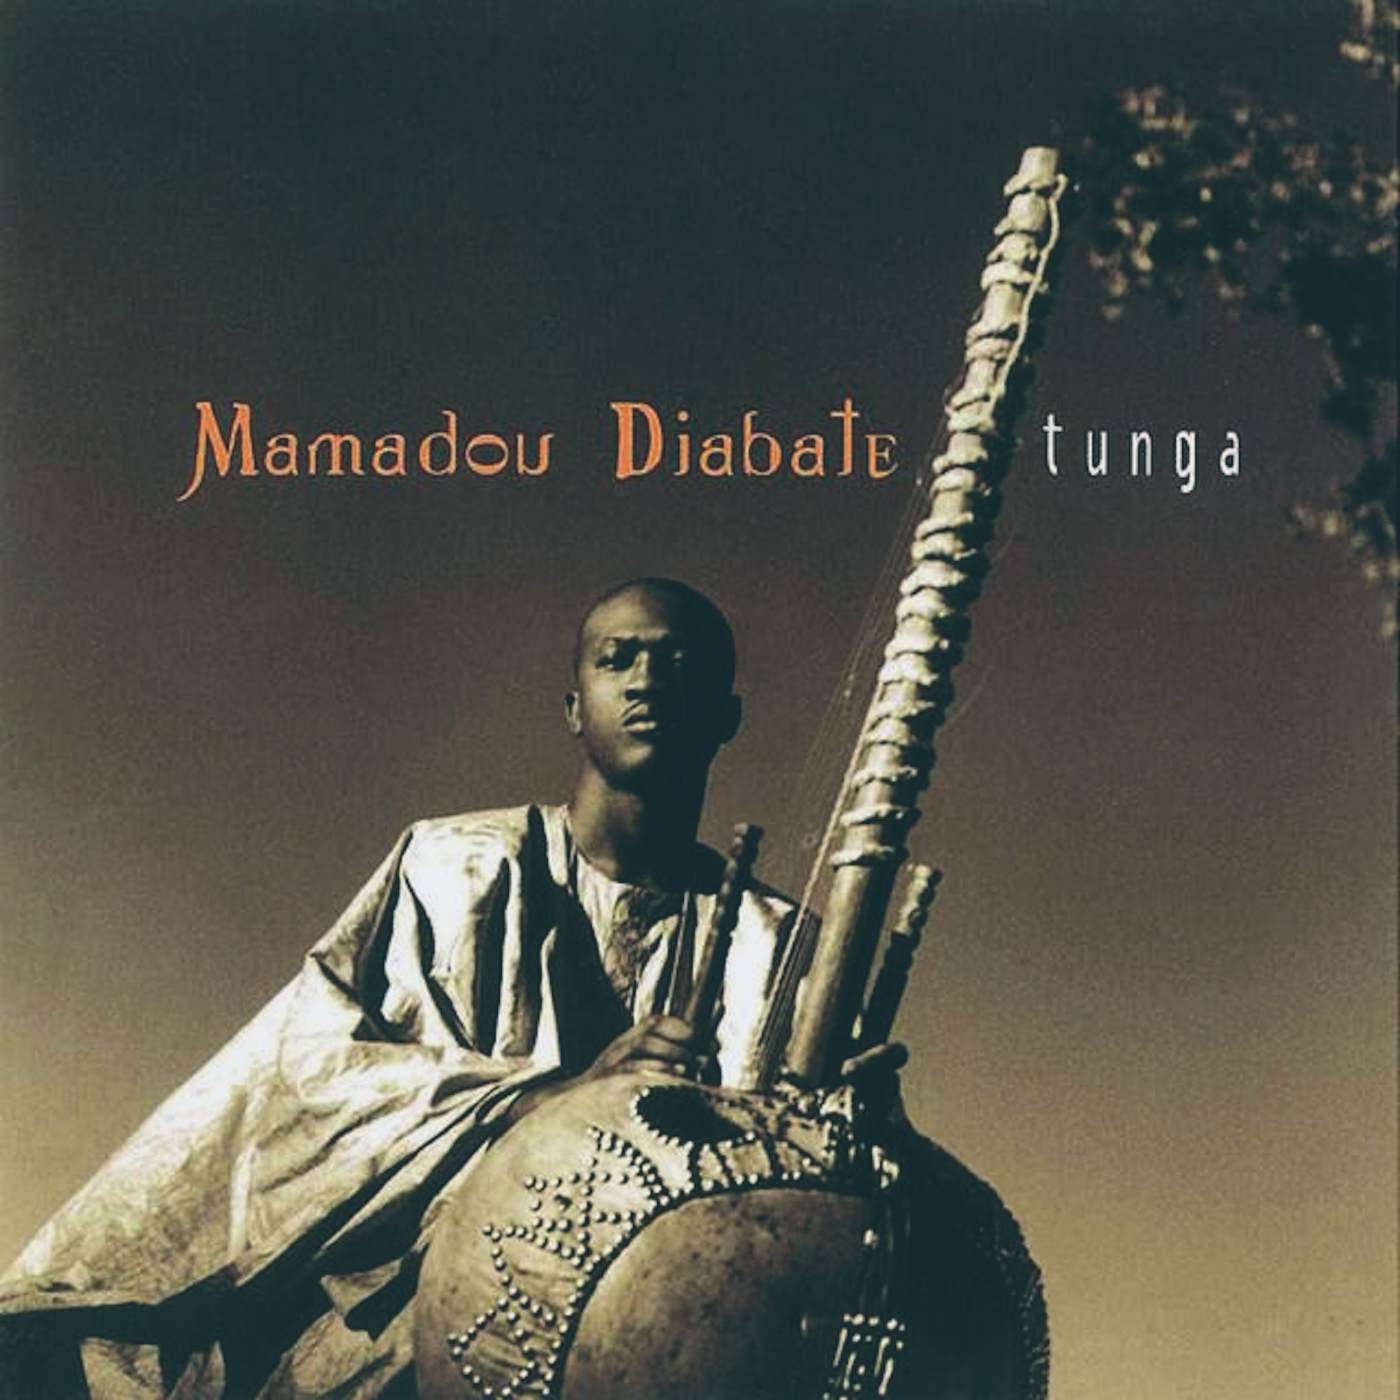 Mamadou Diabaté